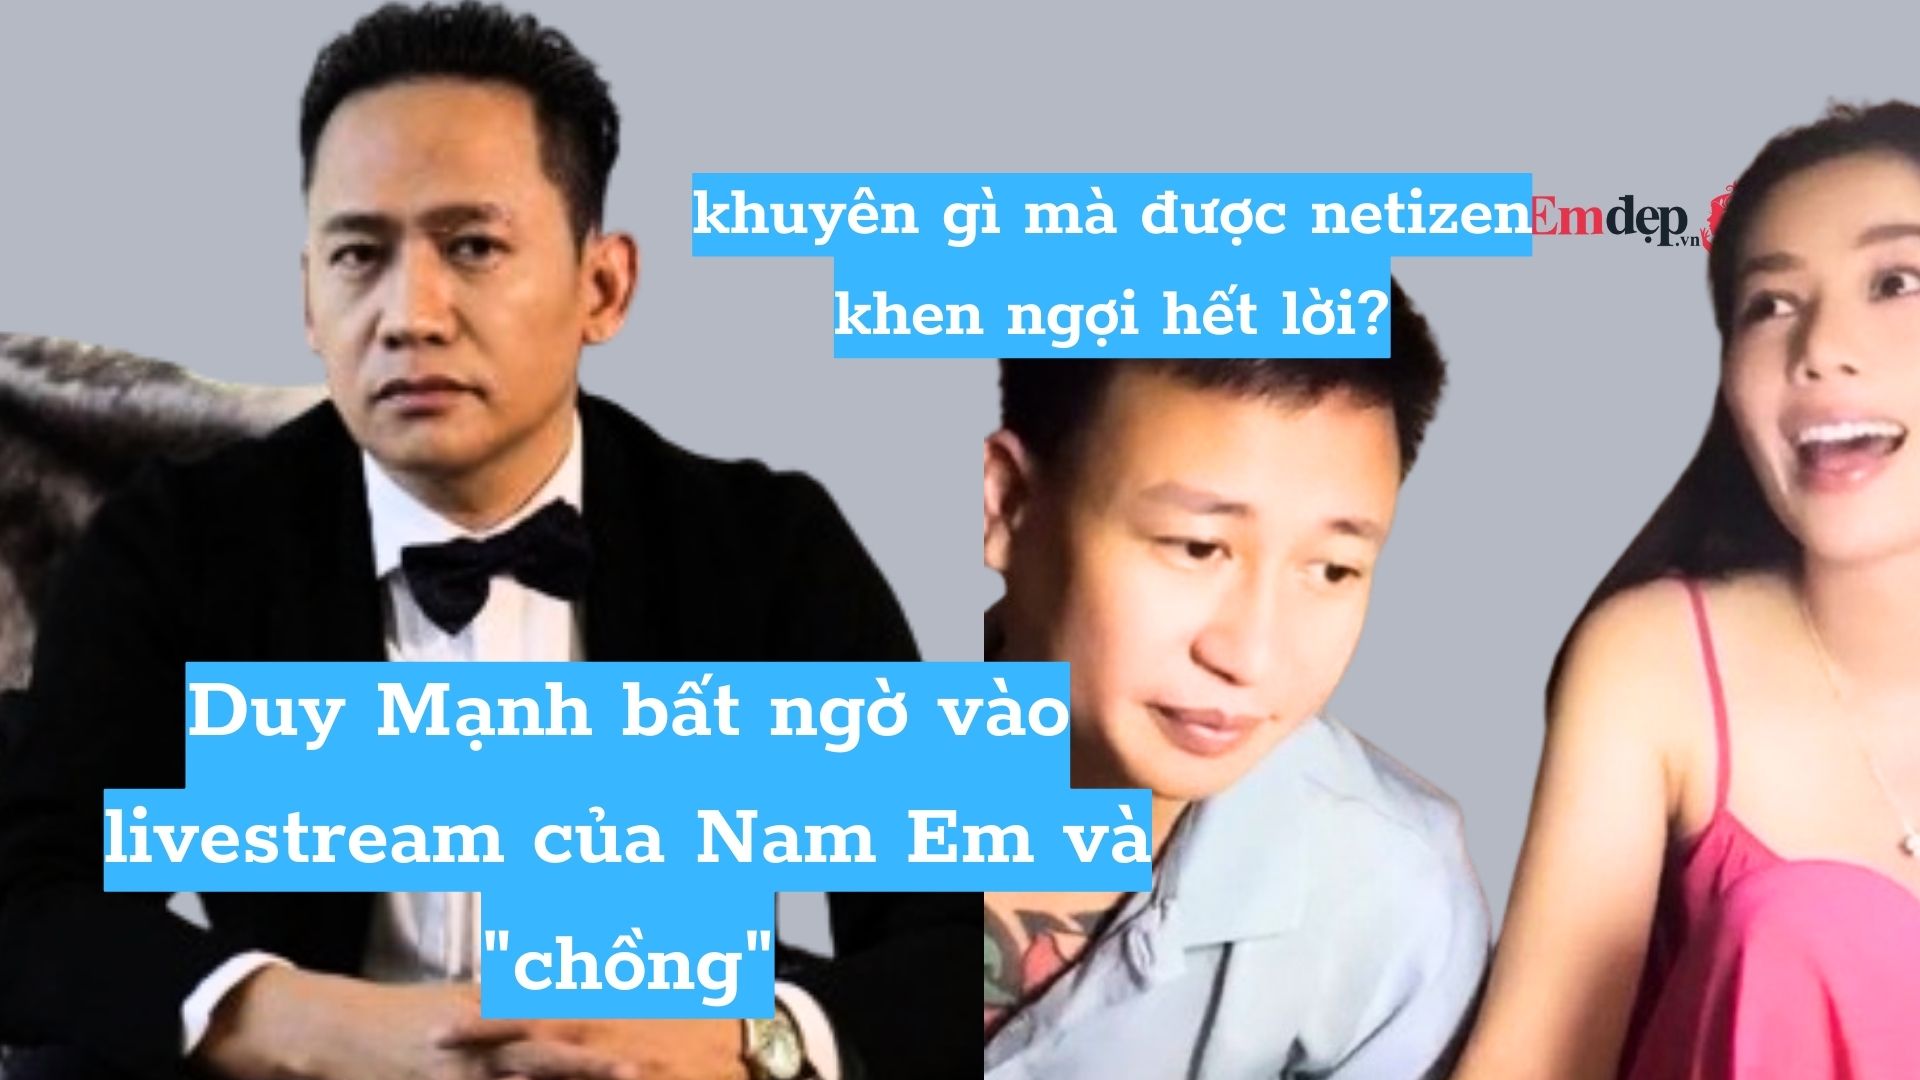 Duy Mạnh bất ngờ vào livestream của Nam Em và "chồng", khuyên gì mà được netizen khen ngợi hết lời?